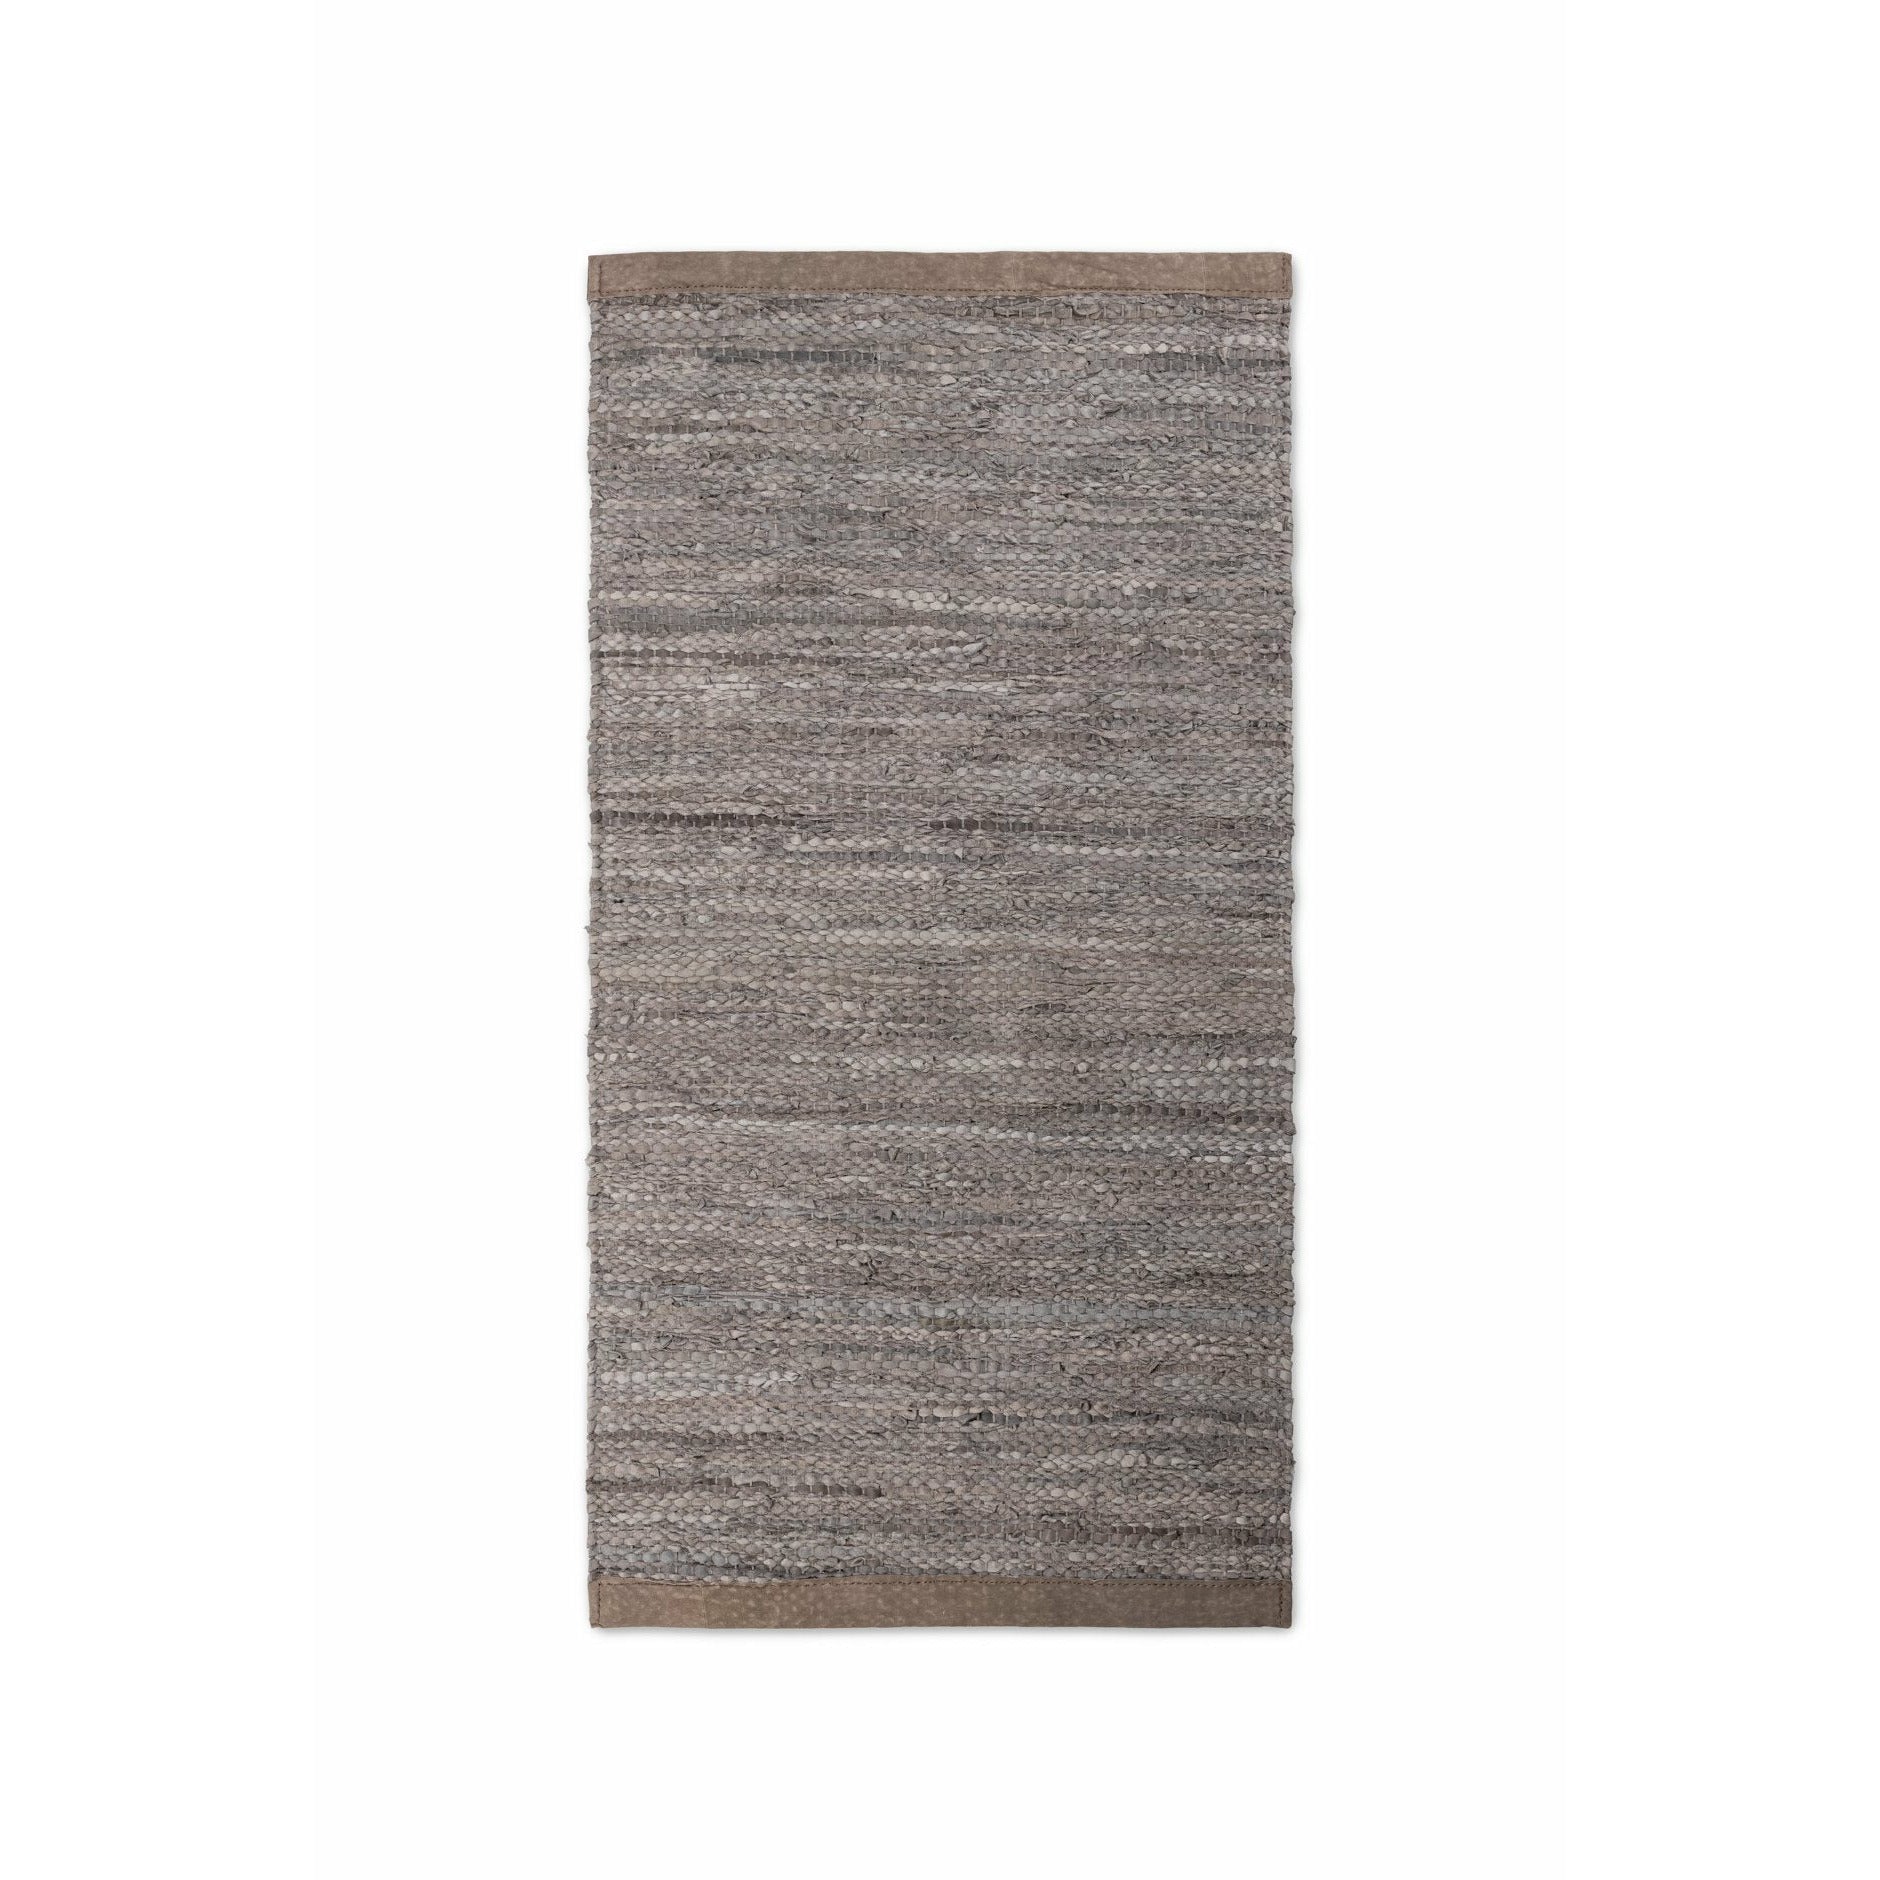 Drewno dywanowe z litego skórzanego drewna, 75 x 200 cm